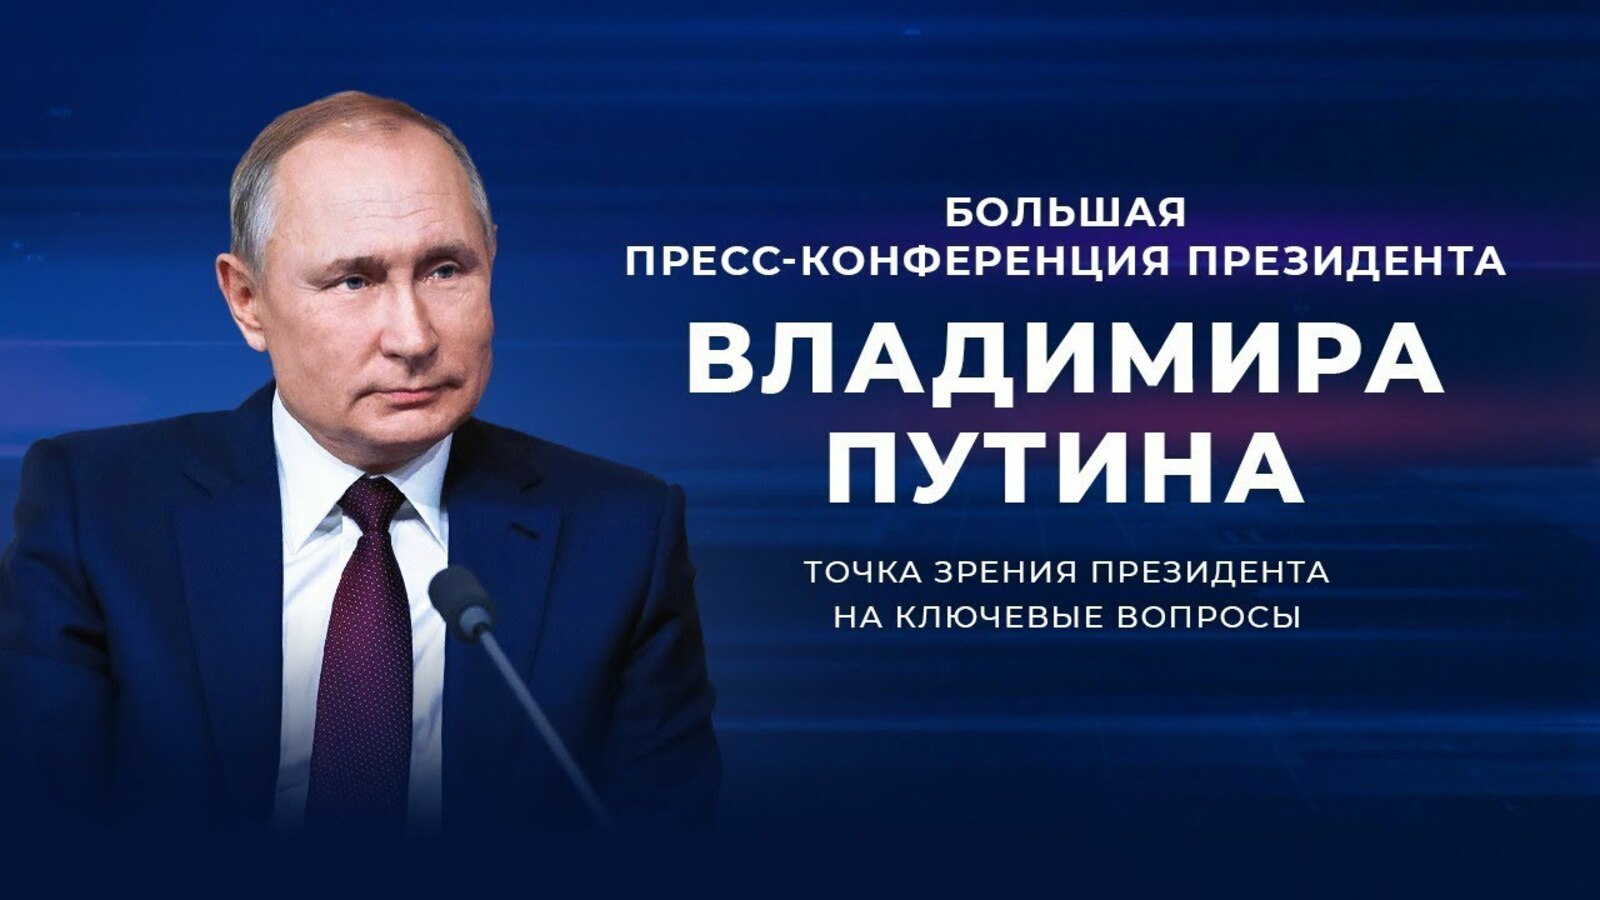 Какие темы могут быть затронуты на пресс-конференции Путина - мнение